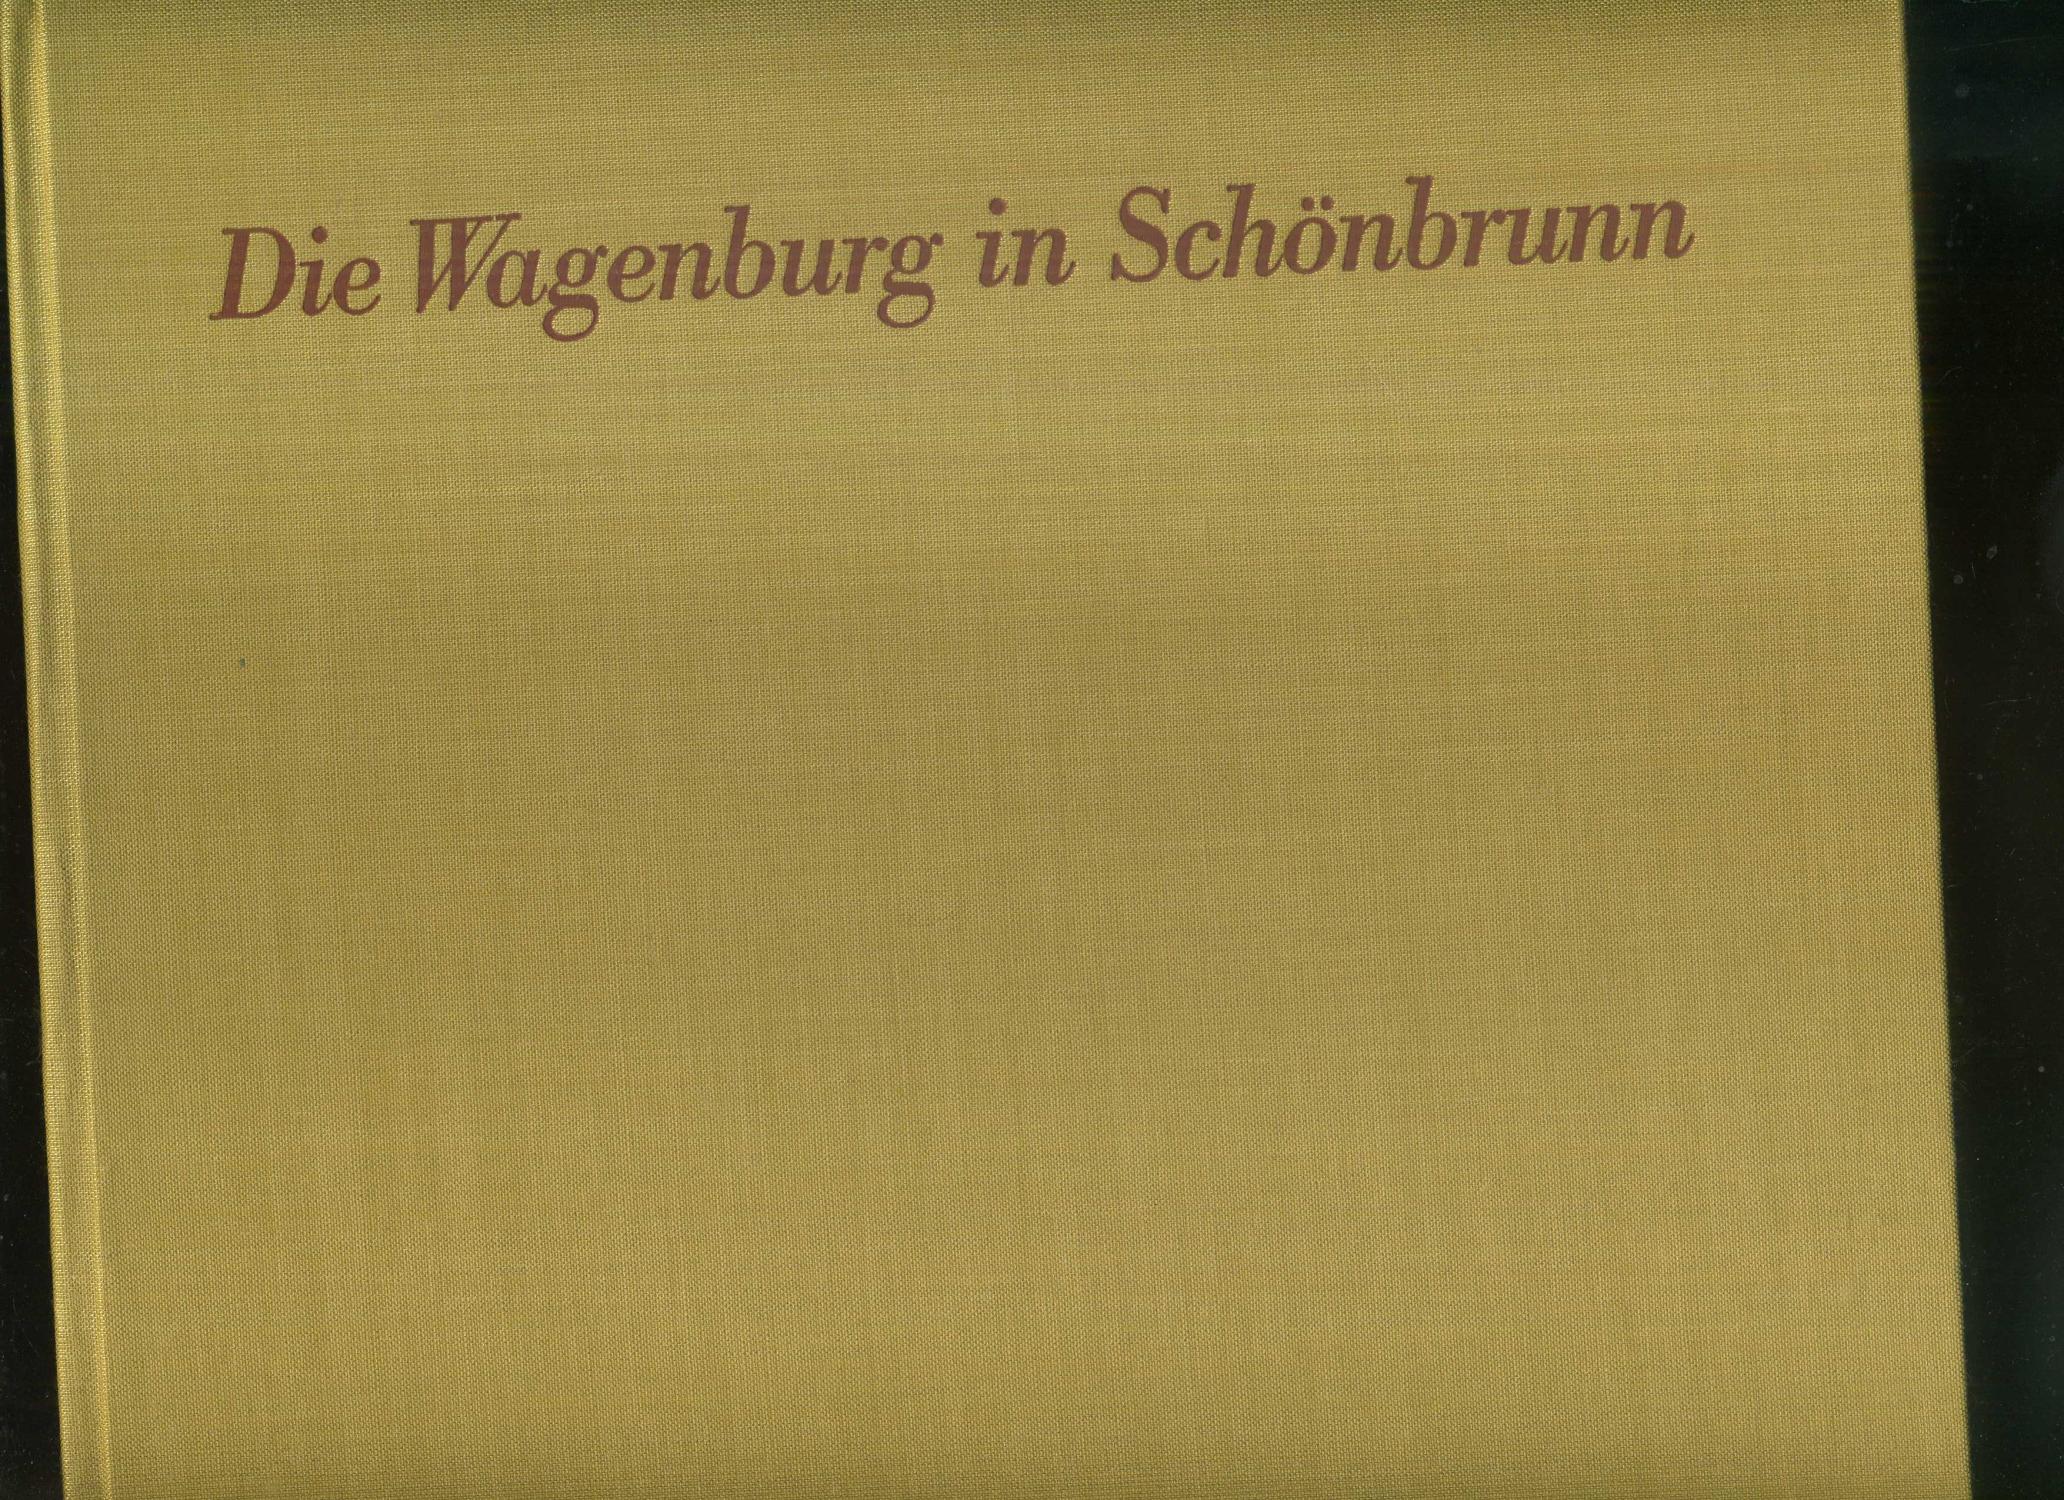 Die Wagenburg in Schönbrunn. Hofwagenburg, Reiche Sattel- und Geschirrkammer der Kaiser von Österreich